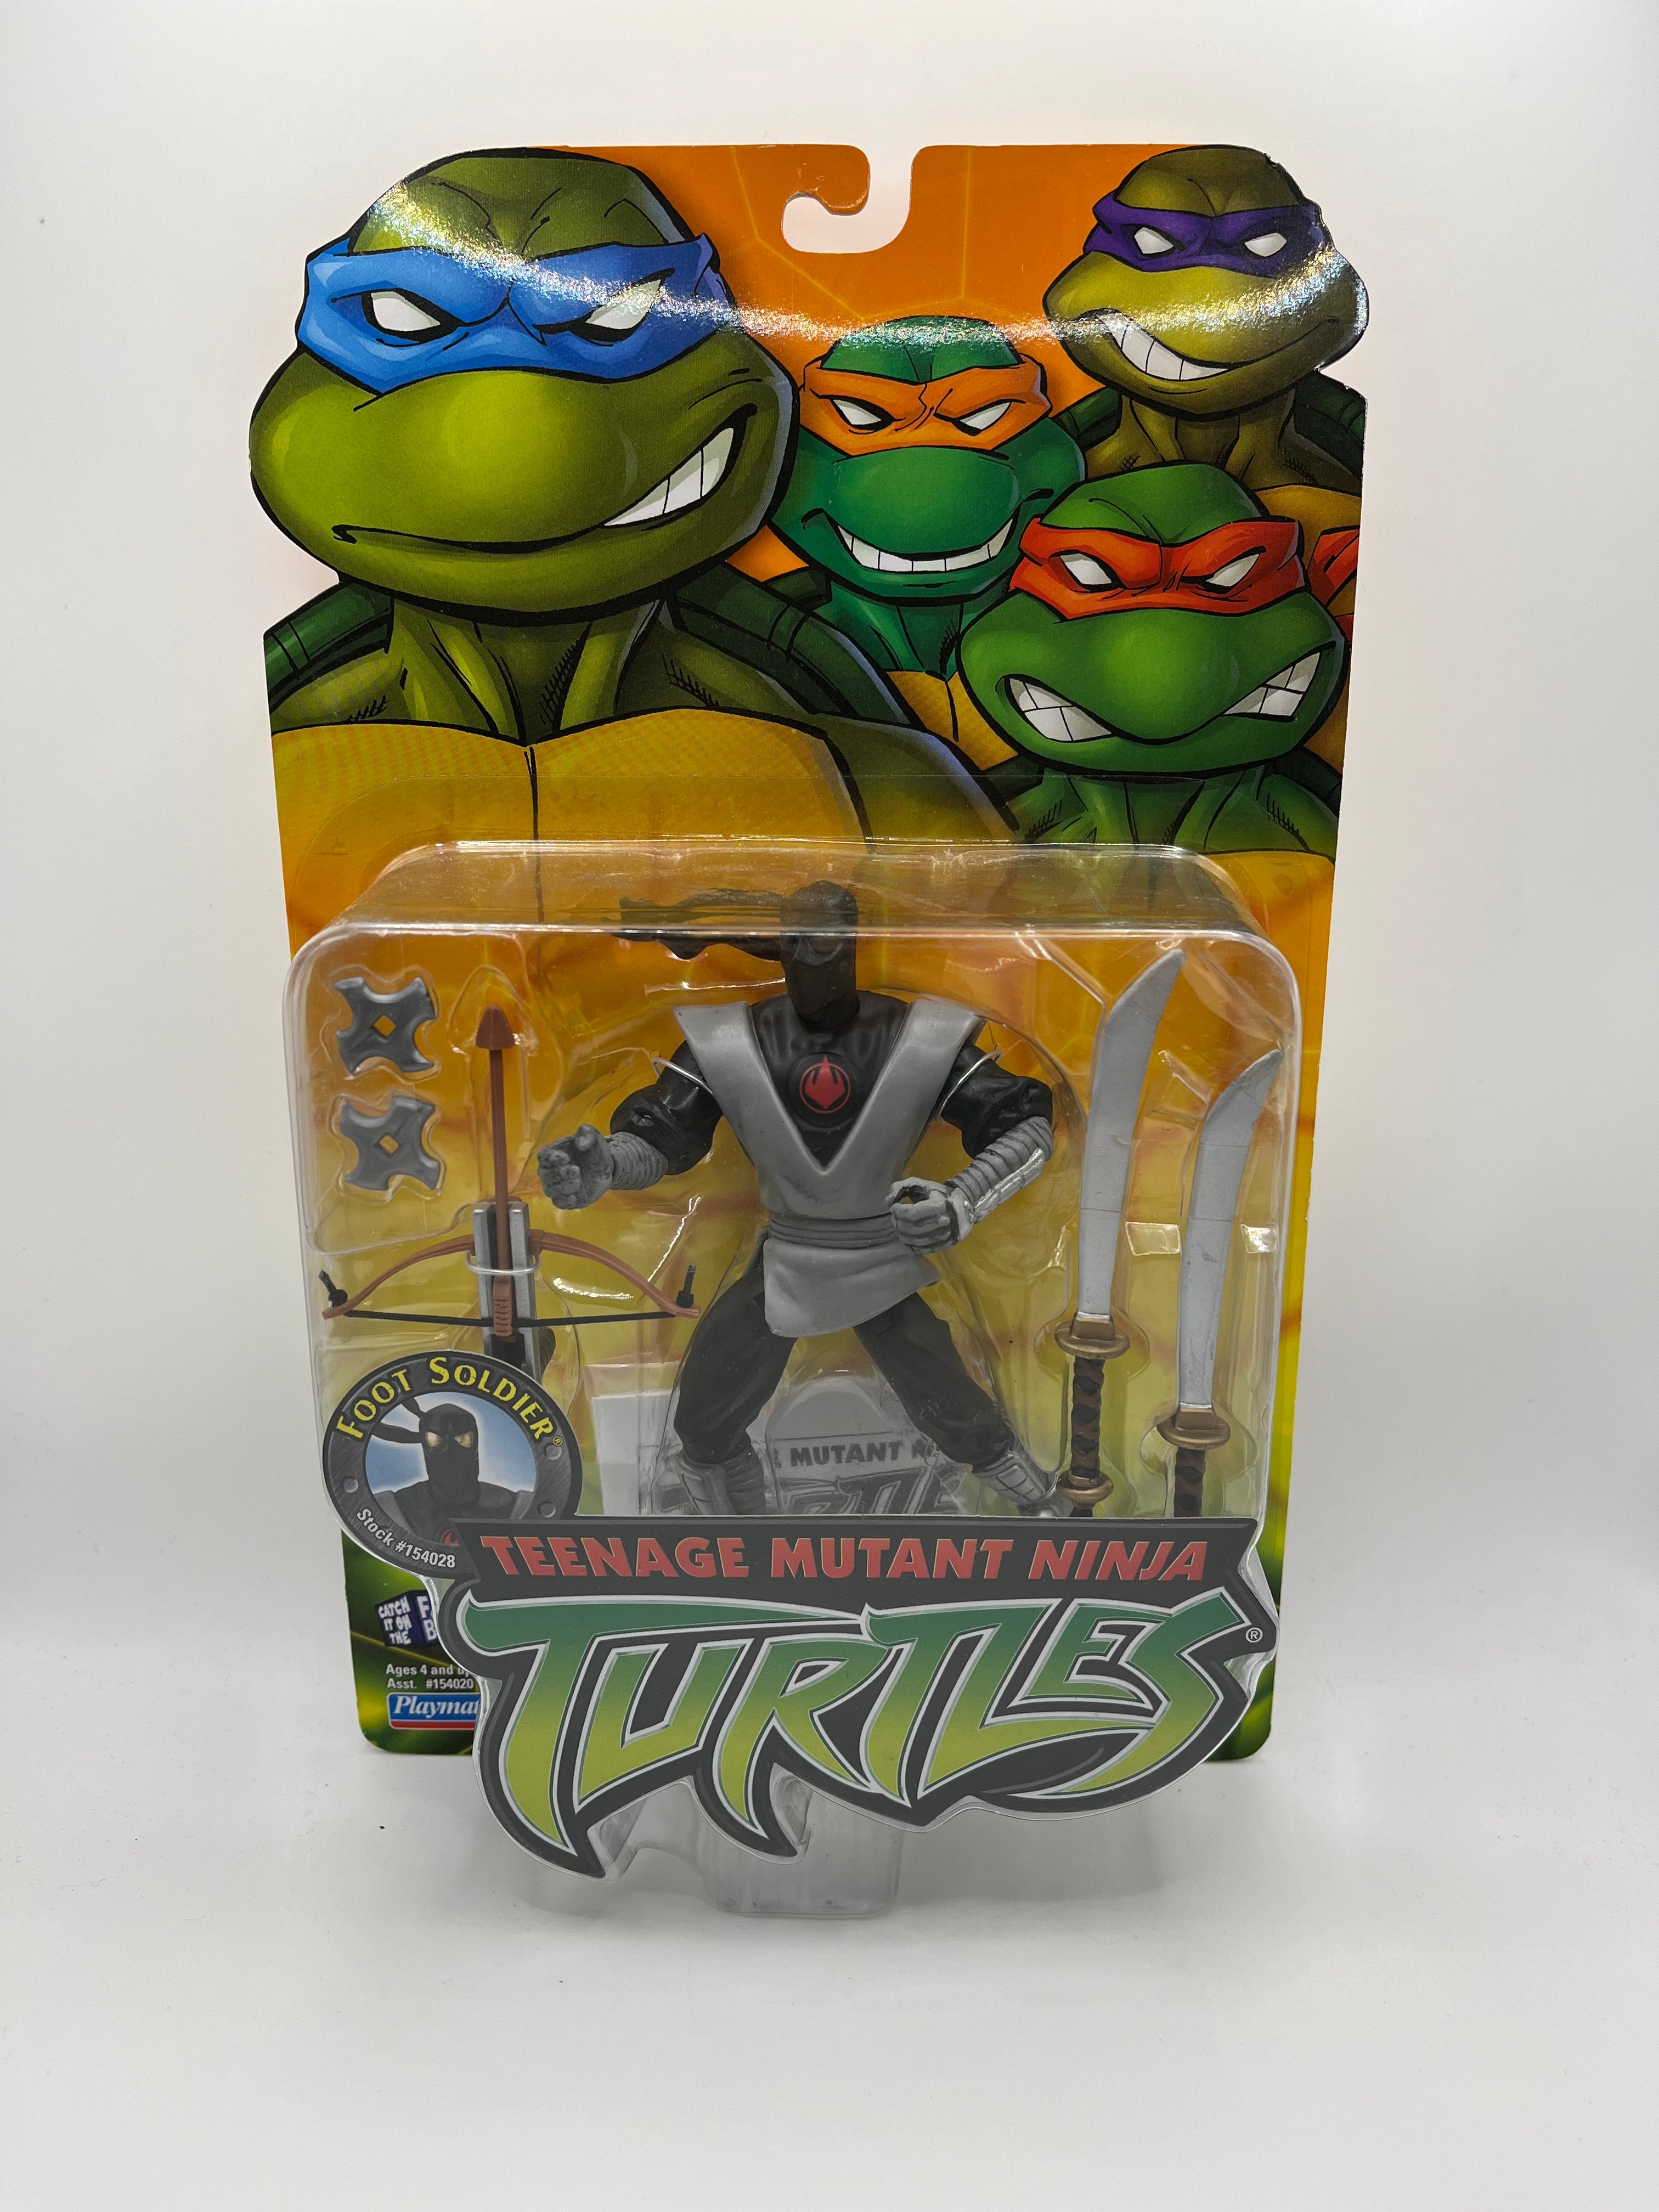 Teenage Mutant Ninja Turtles (2002) Foot Soldier Playmates